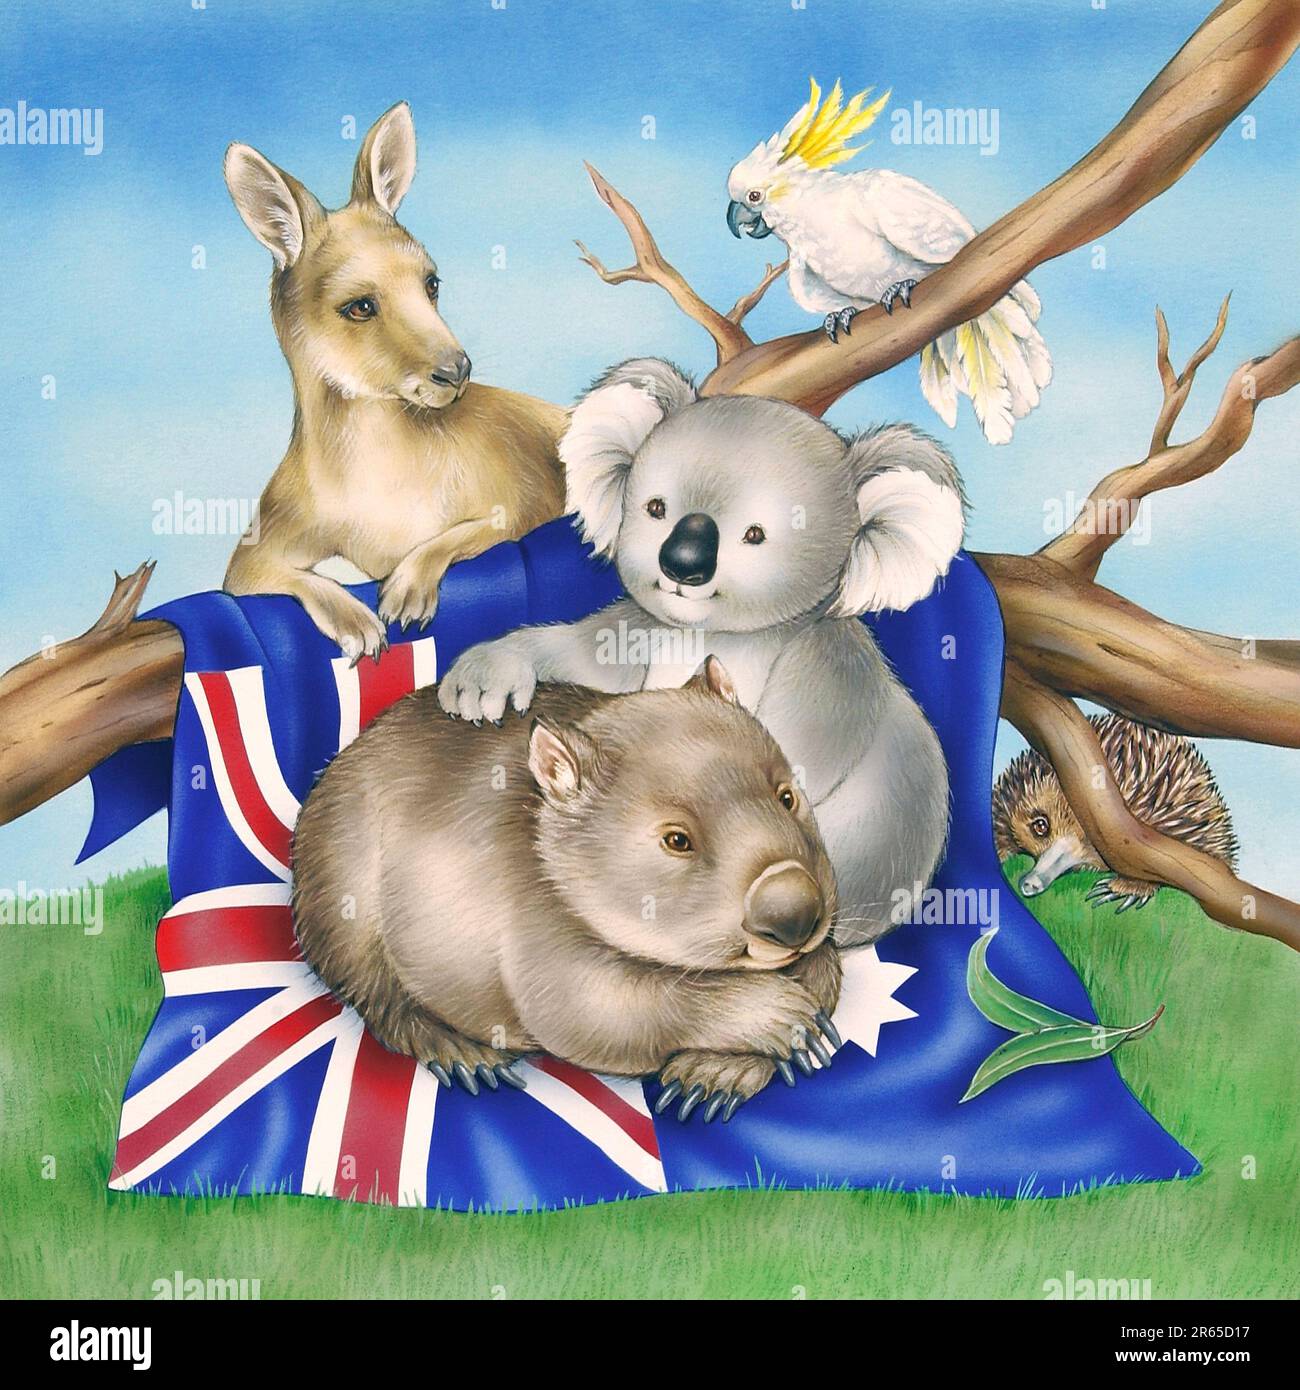 Animals-Australian animals Koalas kangaroo & wombat on flag together jpg Stock Photo